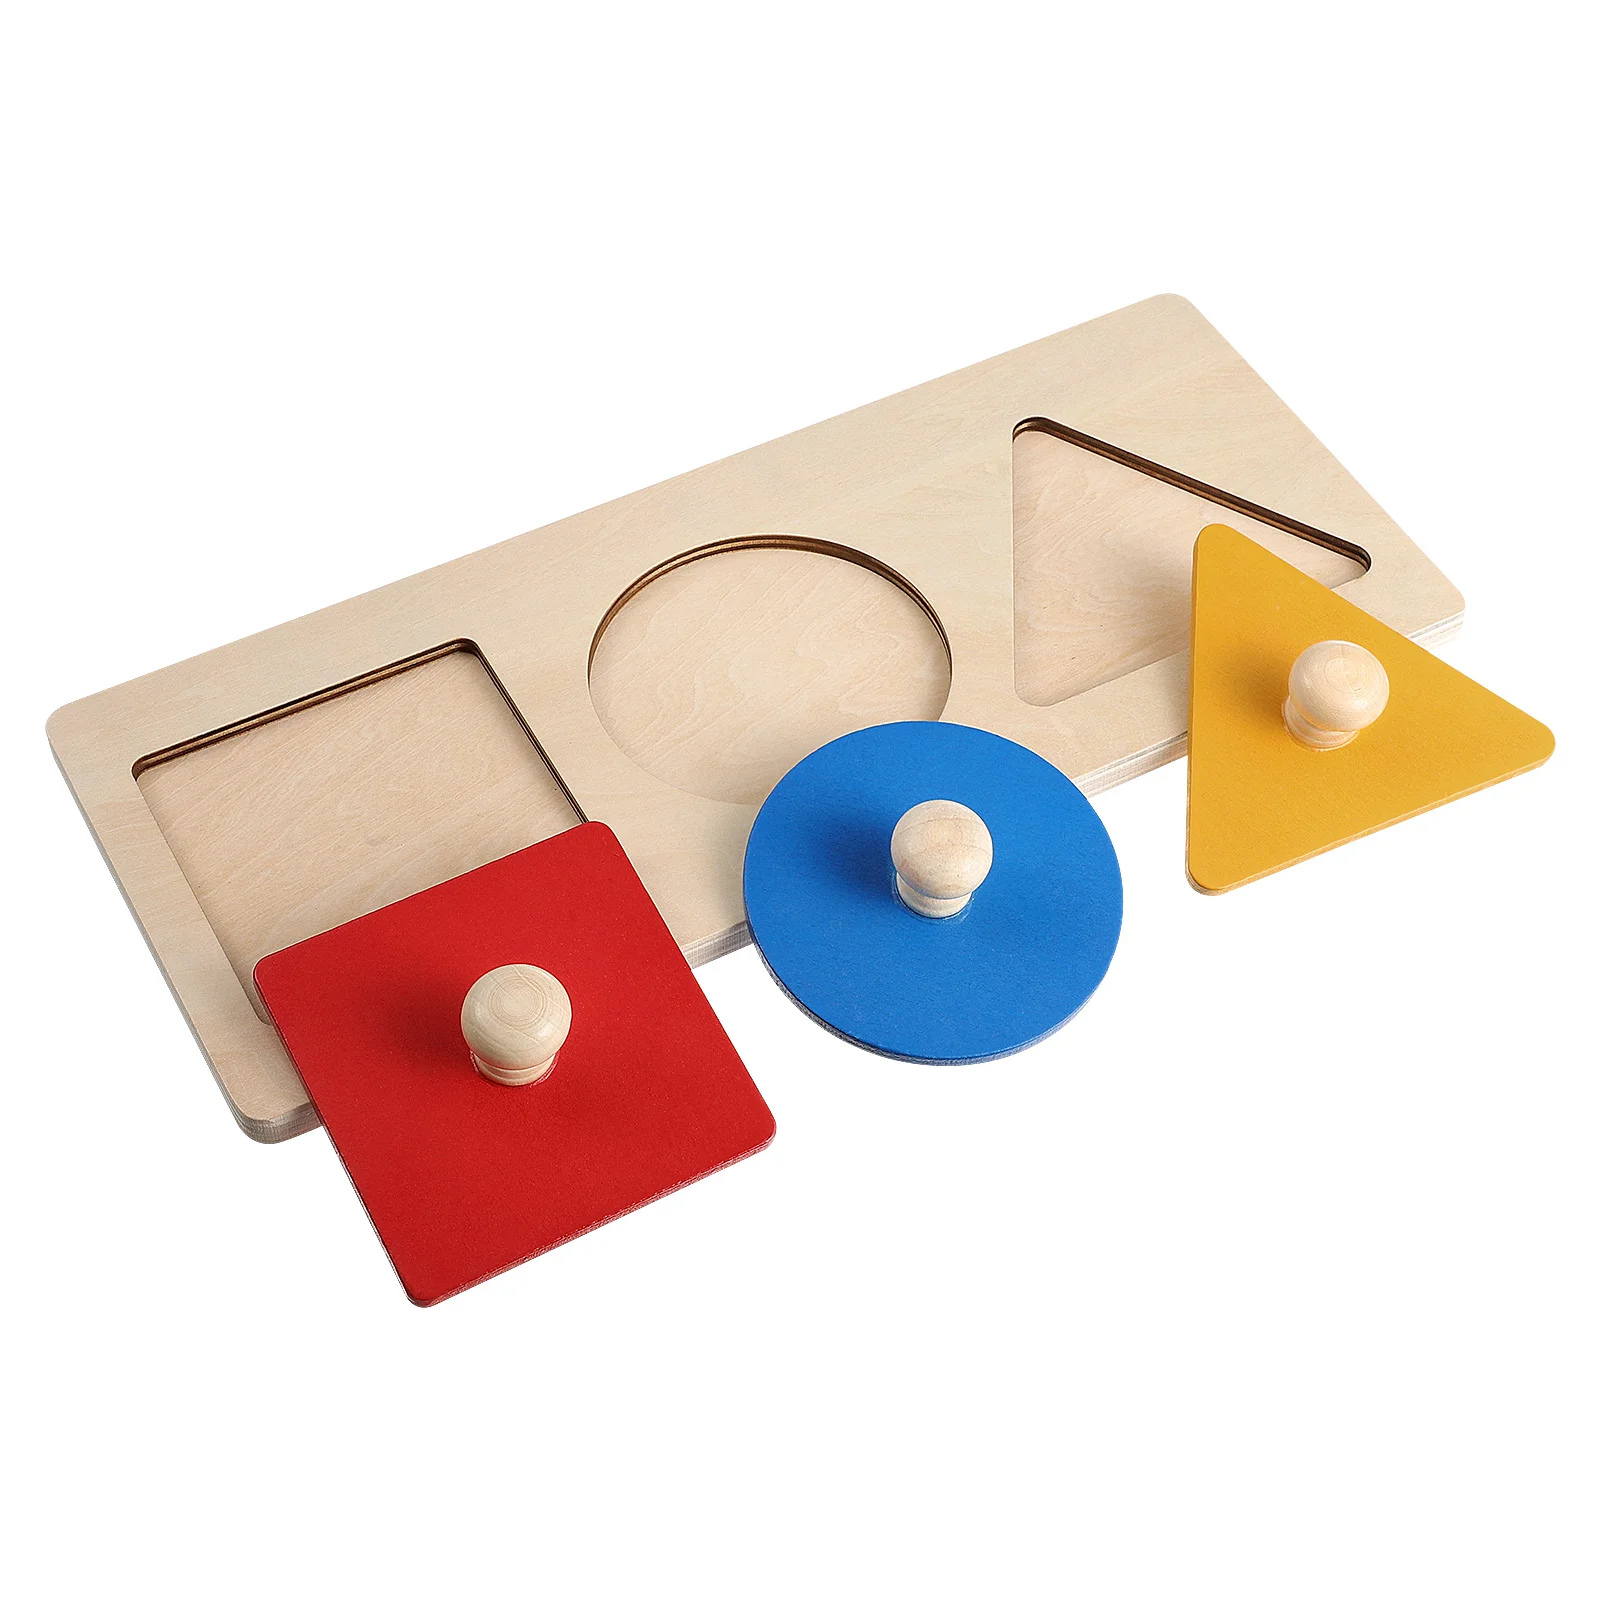 

Детская деревянная Геометрическая панельная головоломка, подарок для дошкольного возраста, для сенсорного обучения, распознавание цветов и форм, математика